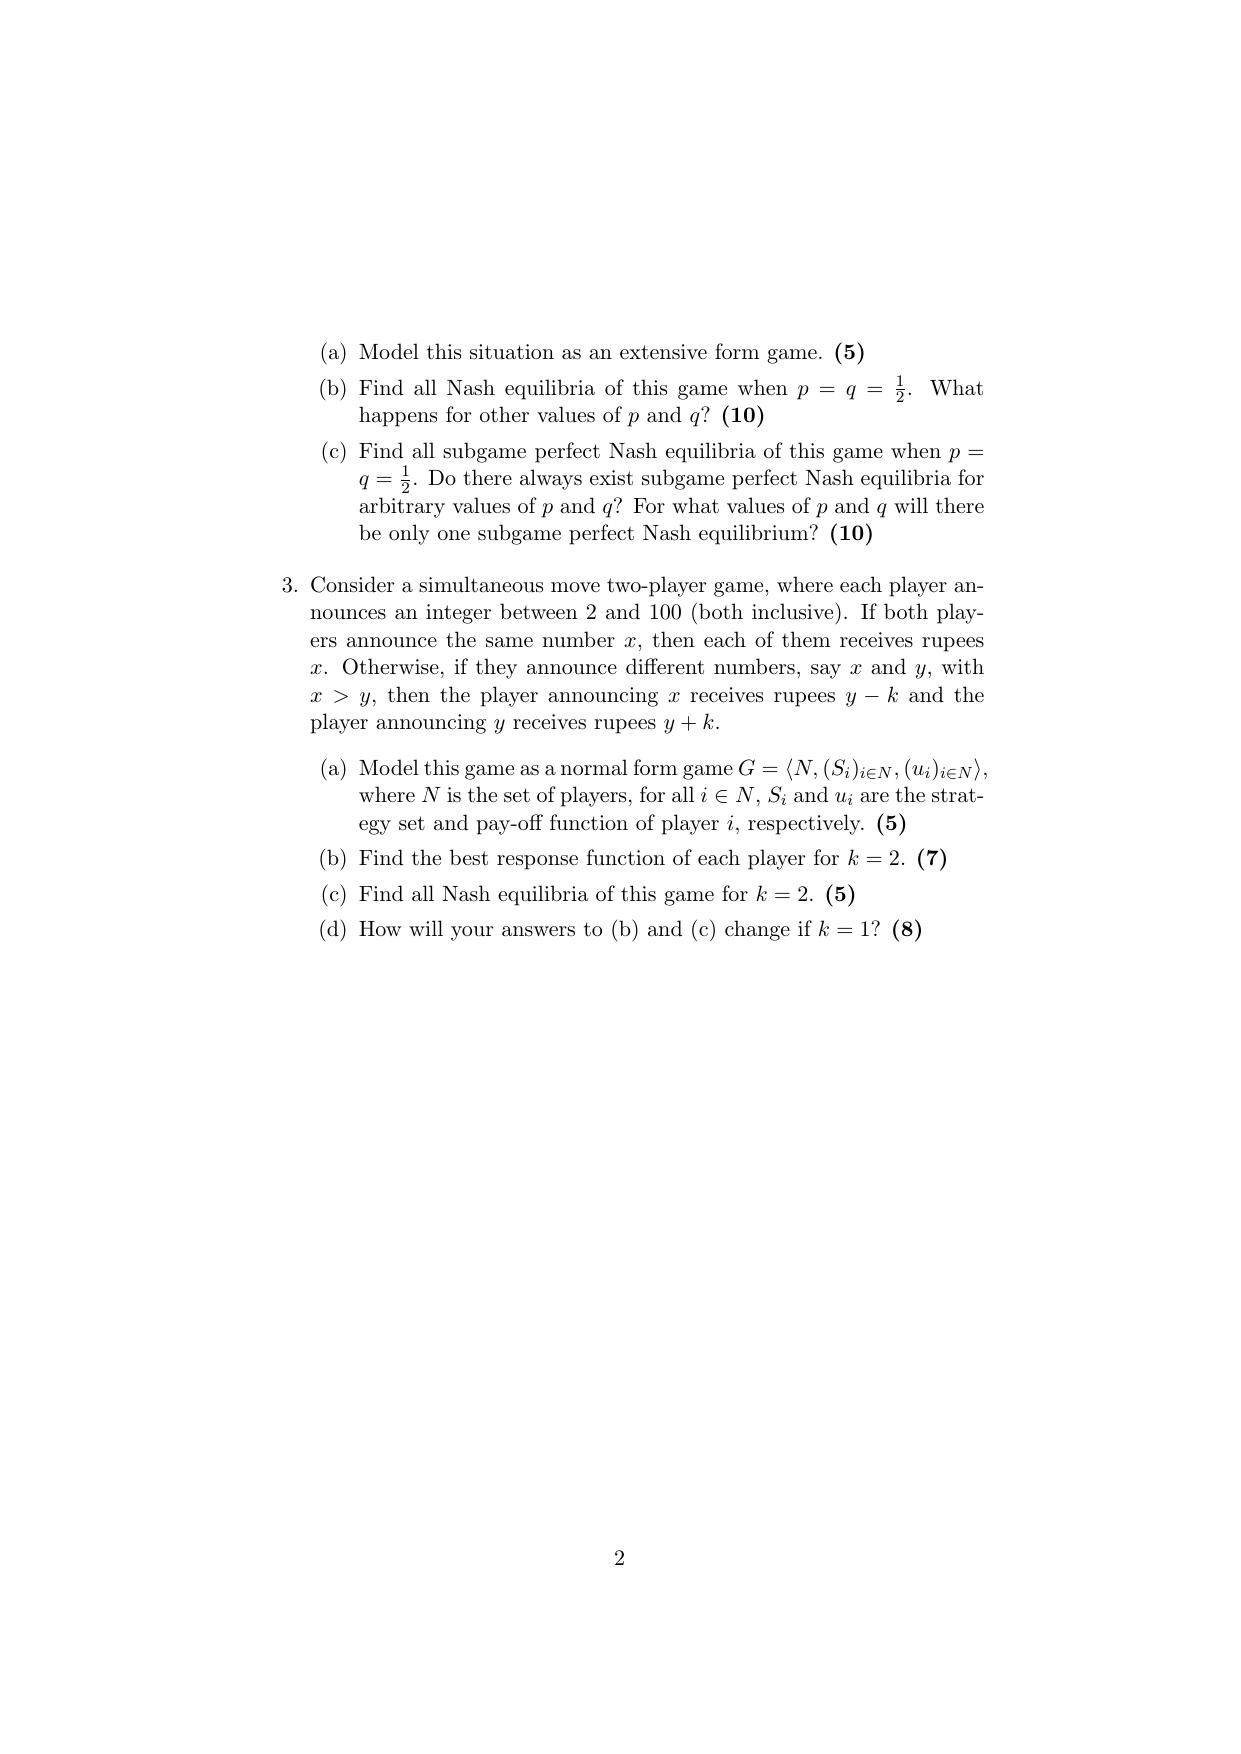 ISI Admission Test JRF in Quantitative Economics QEB 2019 Sample Paper - Page 2